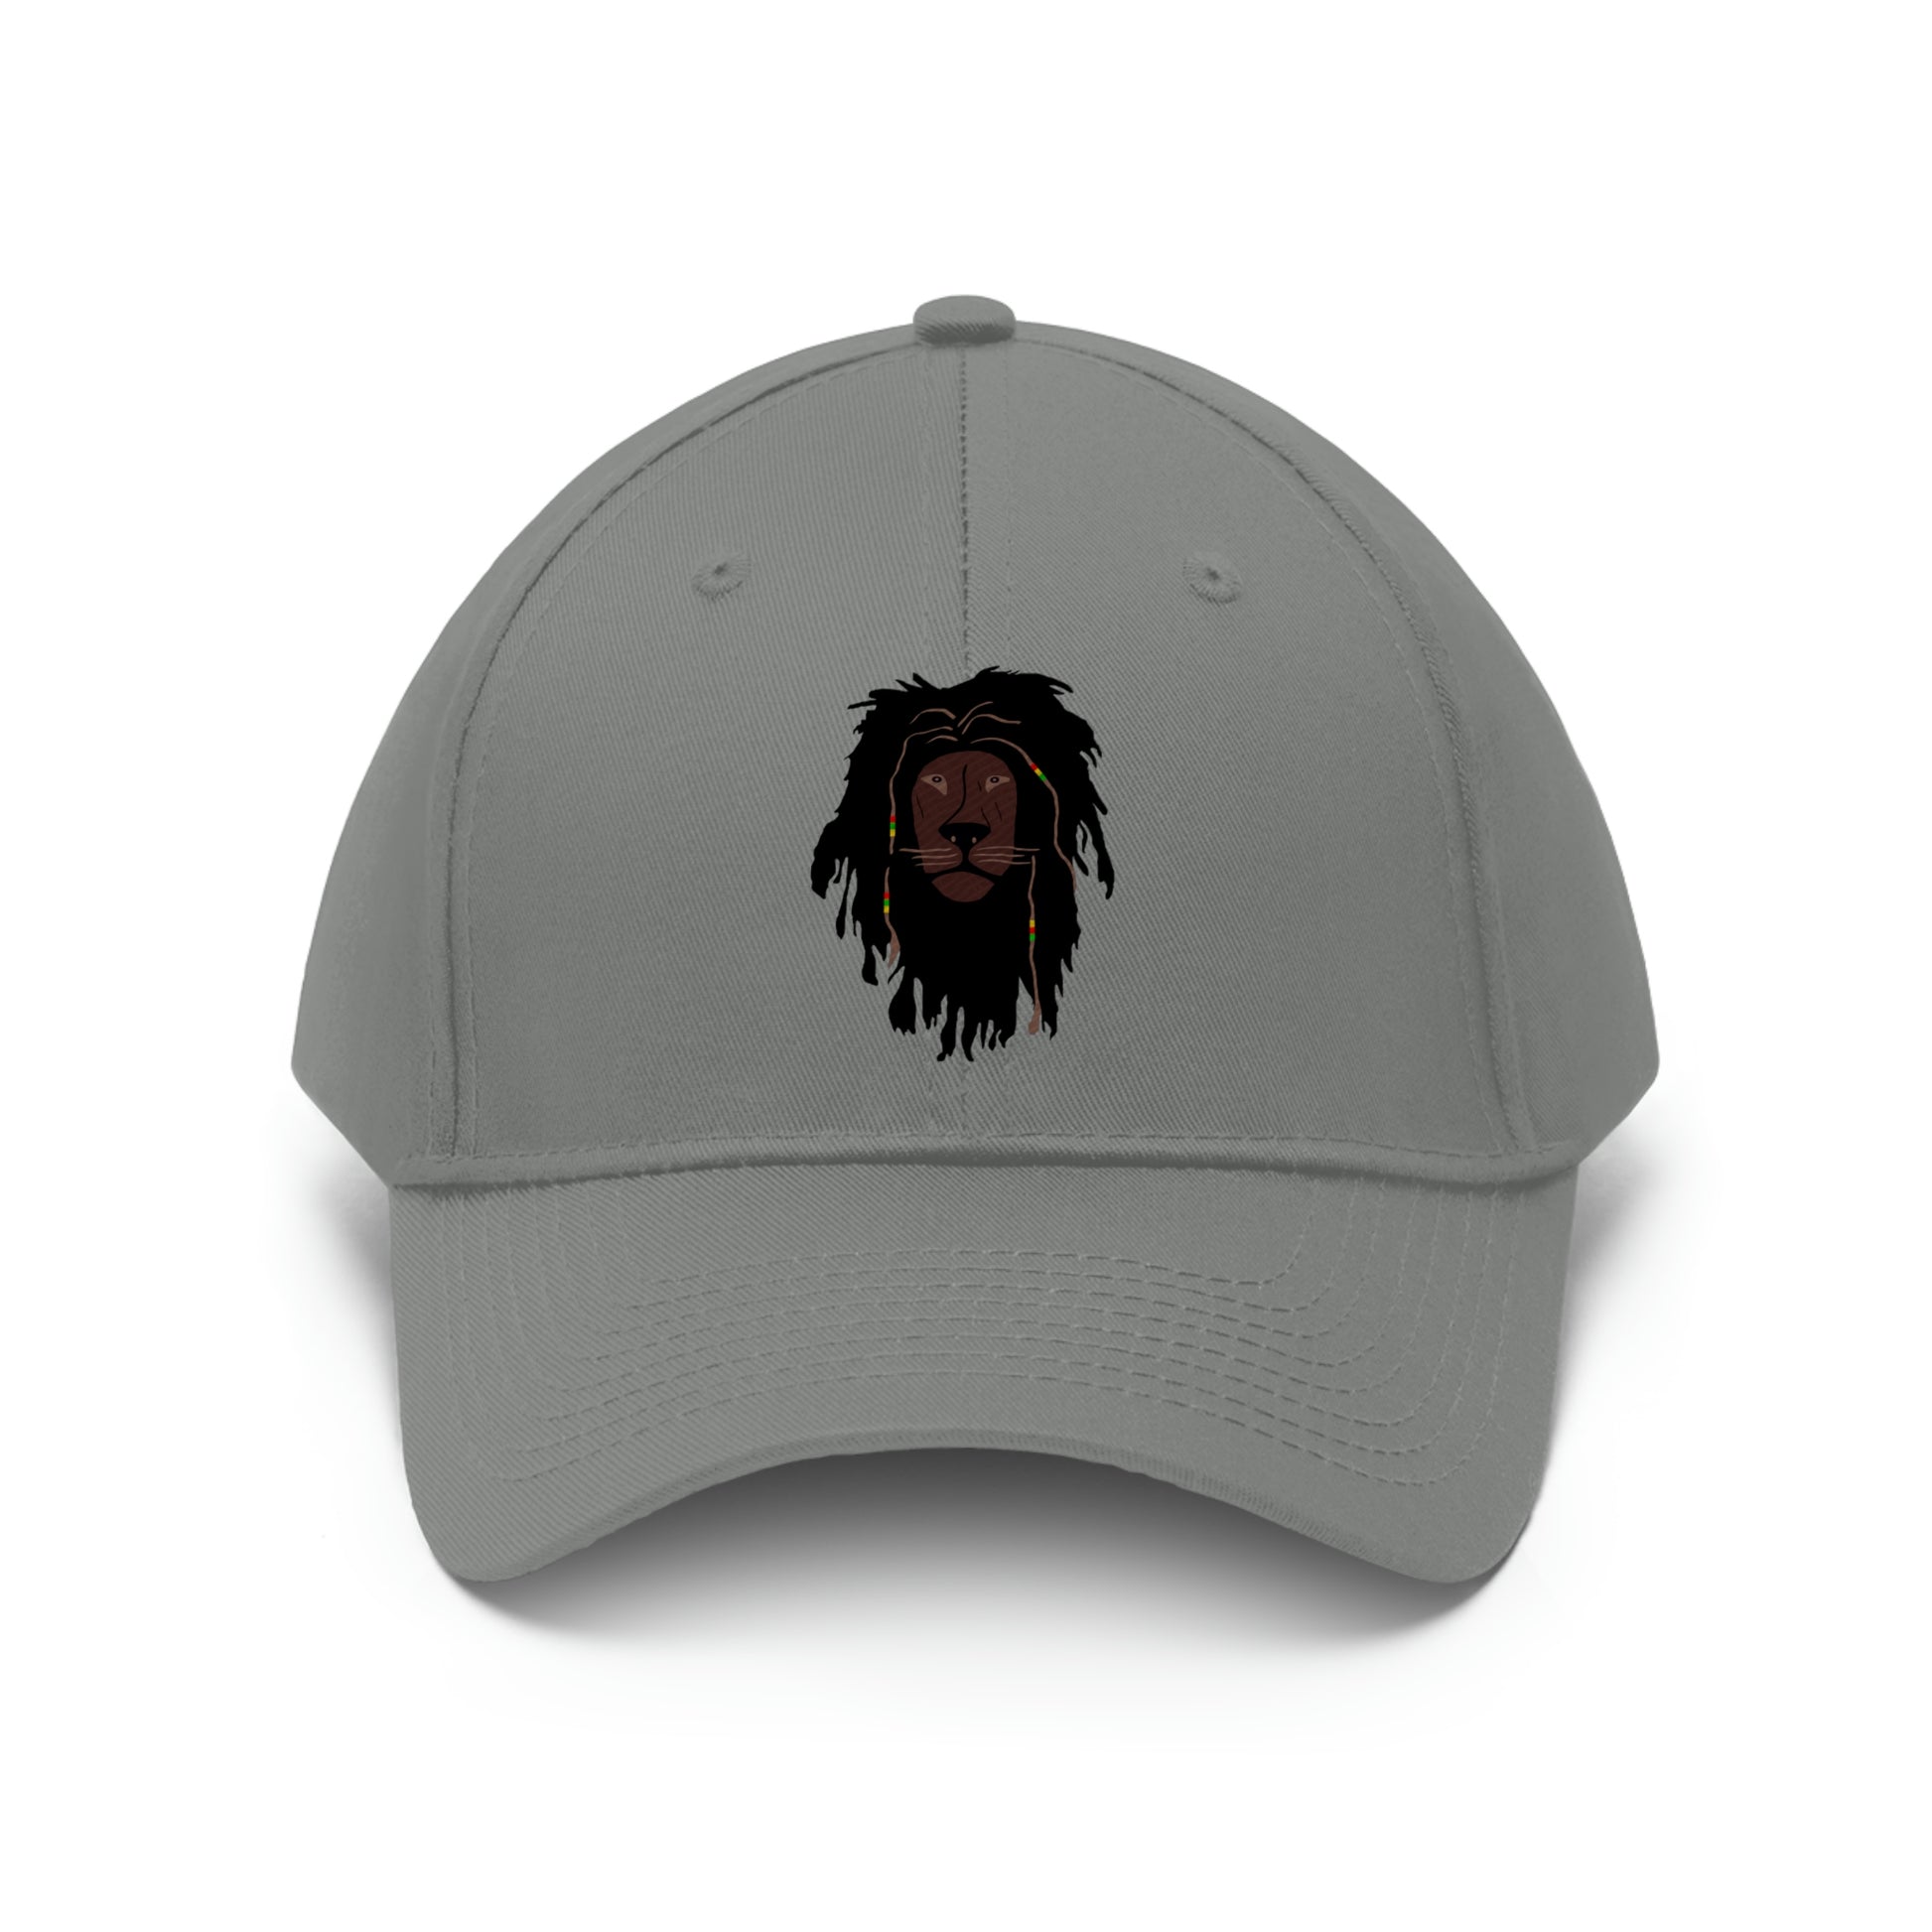 Lion Head hat by zagsavant